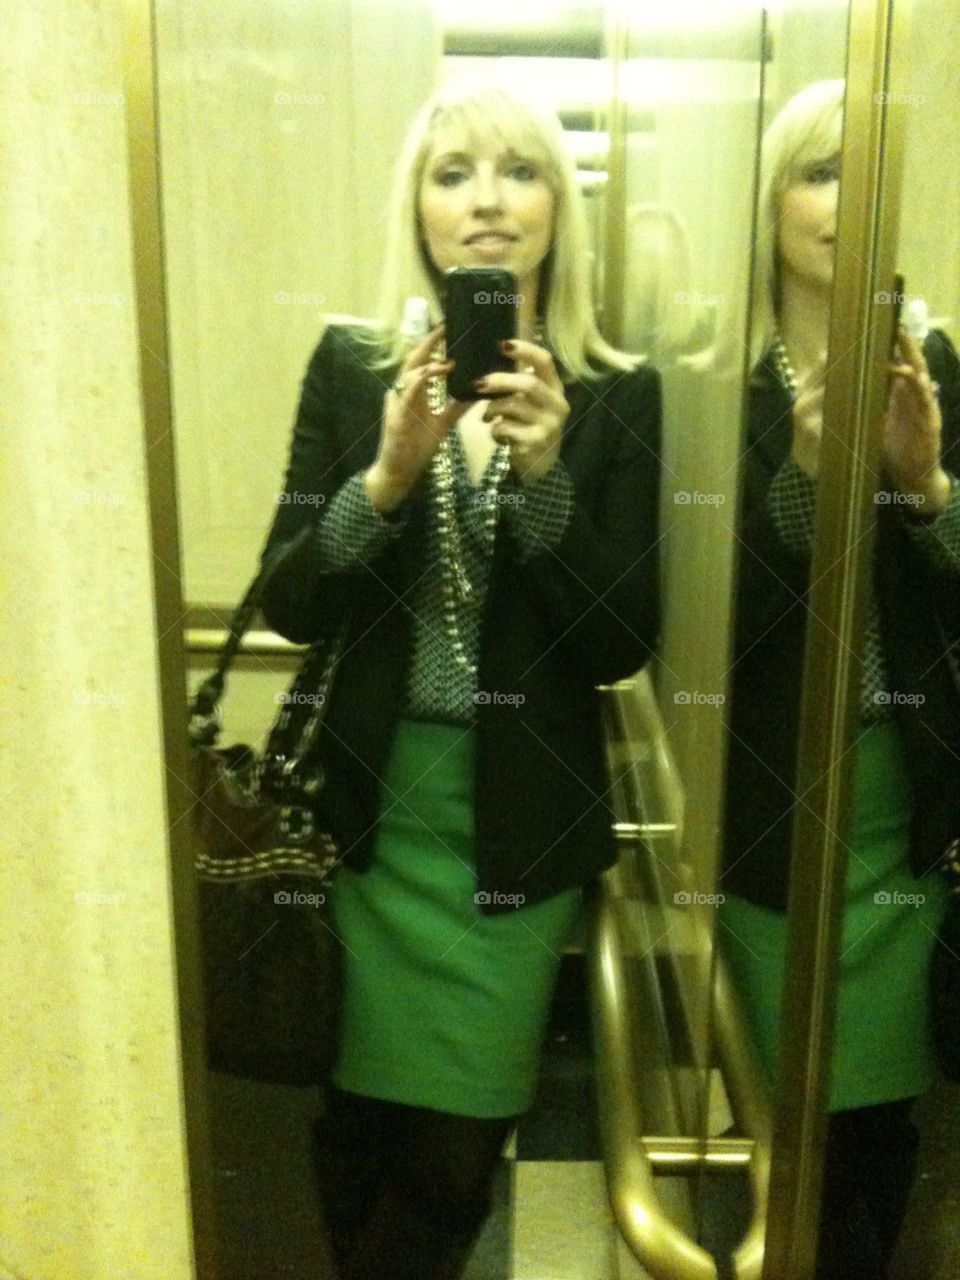 Elevator selfie